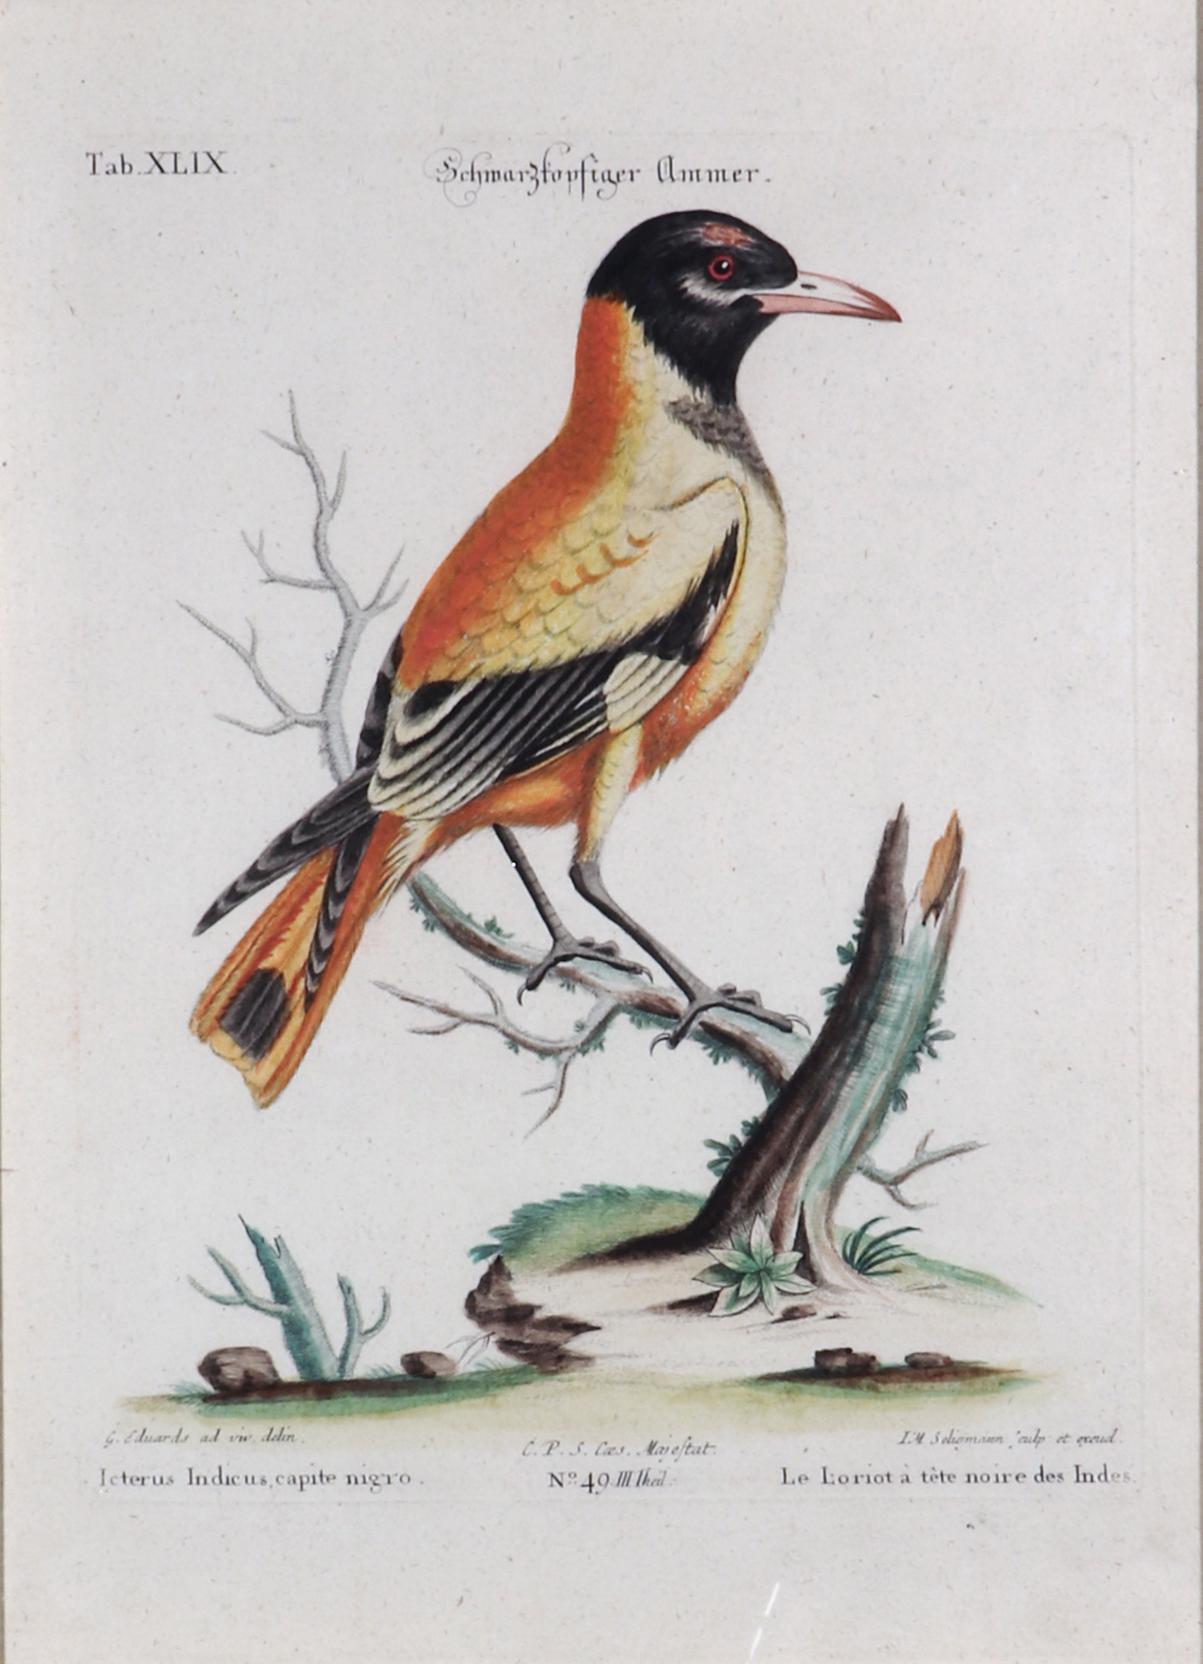 Johann Seligmann Gravure d'oiseau, 
Onglet XLIX, 
Le Loriot a tete noires Indes,
1770s

La gravure de Johann Seligmann de l'édition française a été coloriée à la main lors de la publication et est maintenant montée dans un cadre de découpage.

Les